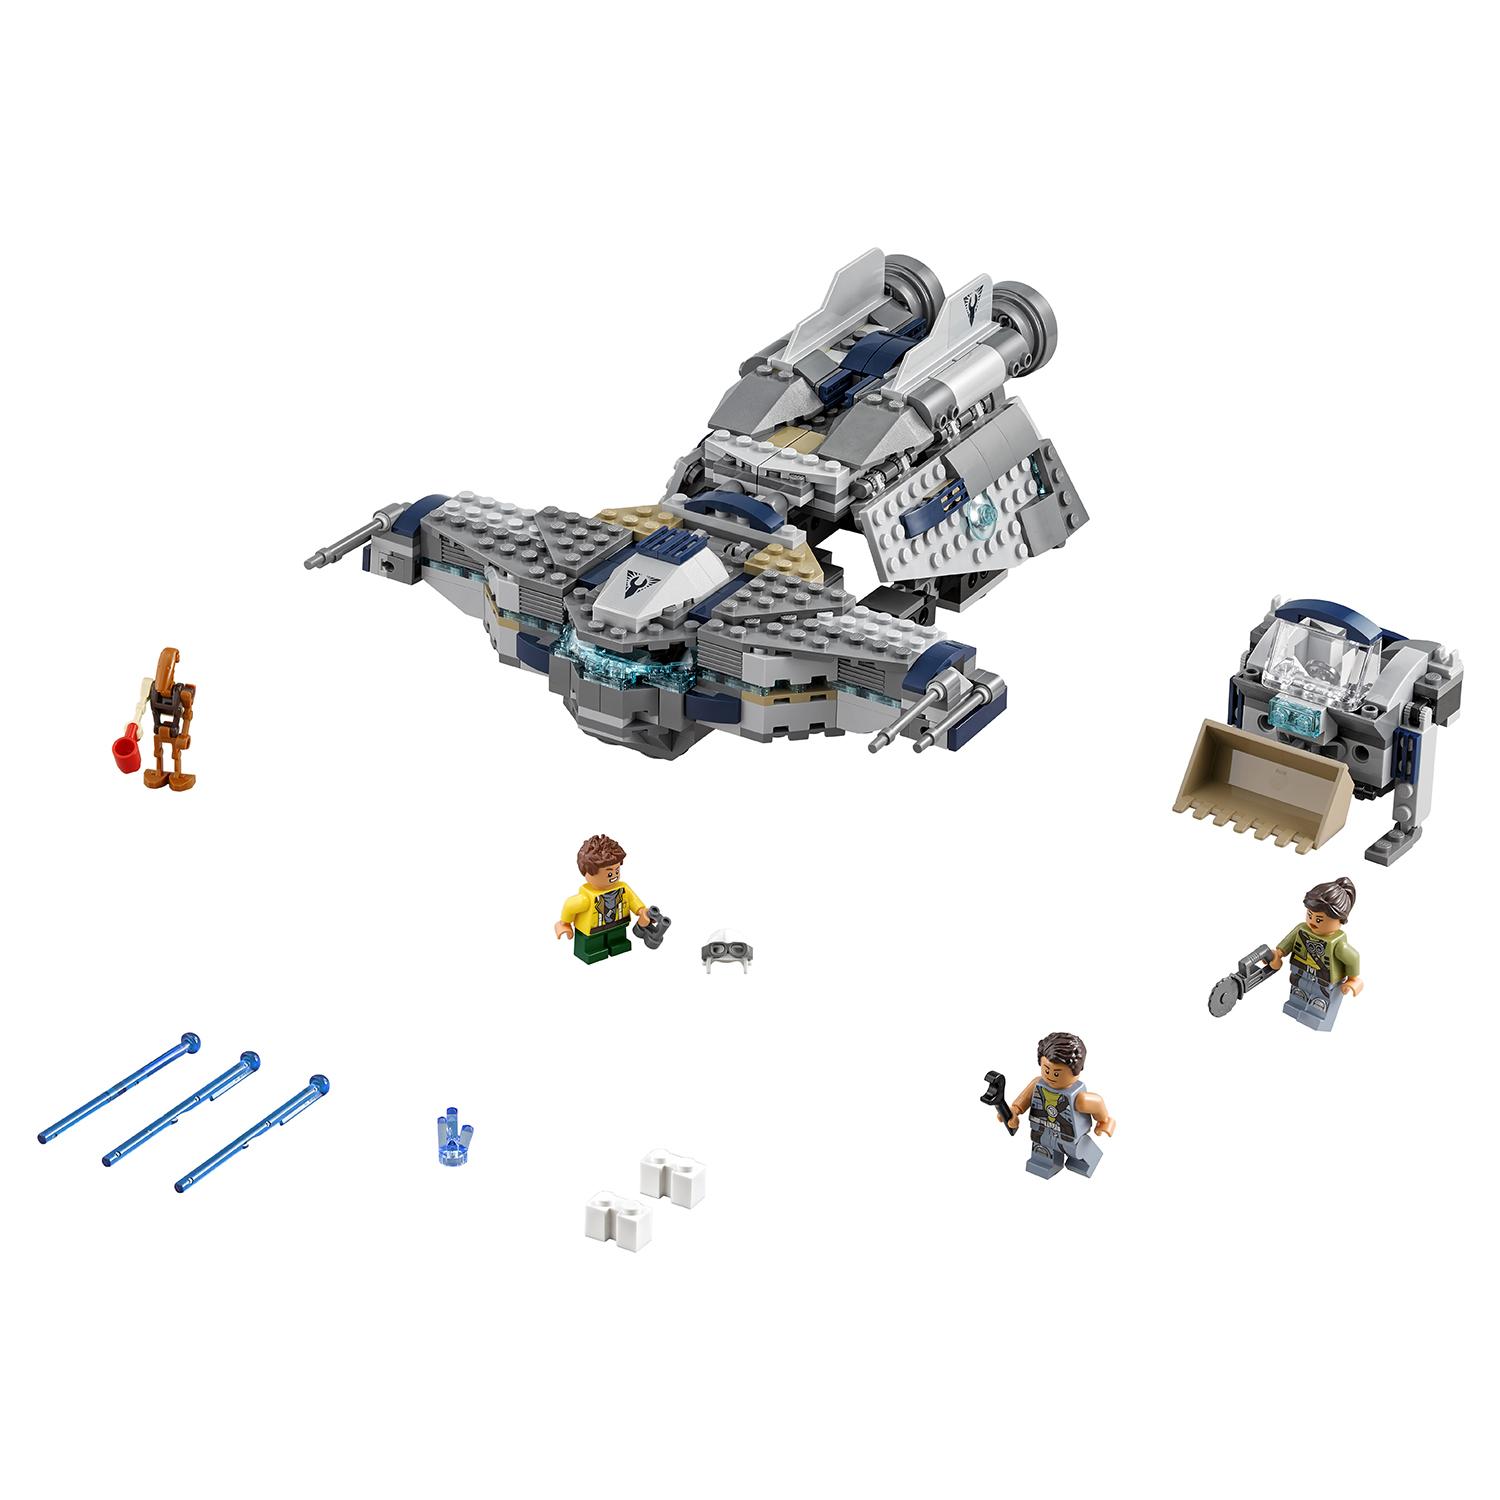 Lego Star Wars 75147 Звёздный Мусорщик